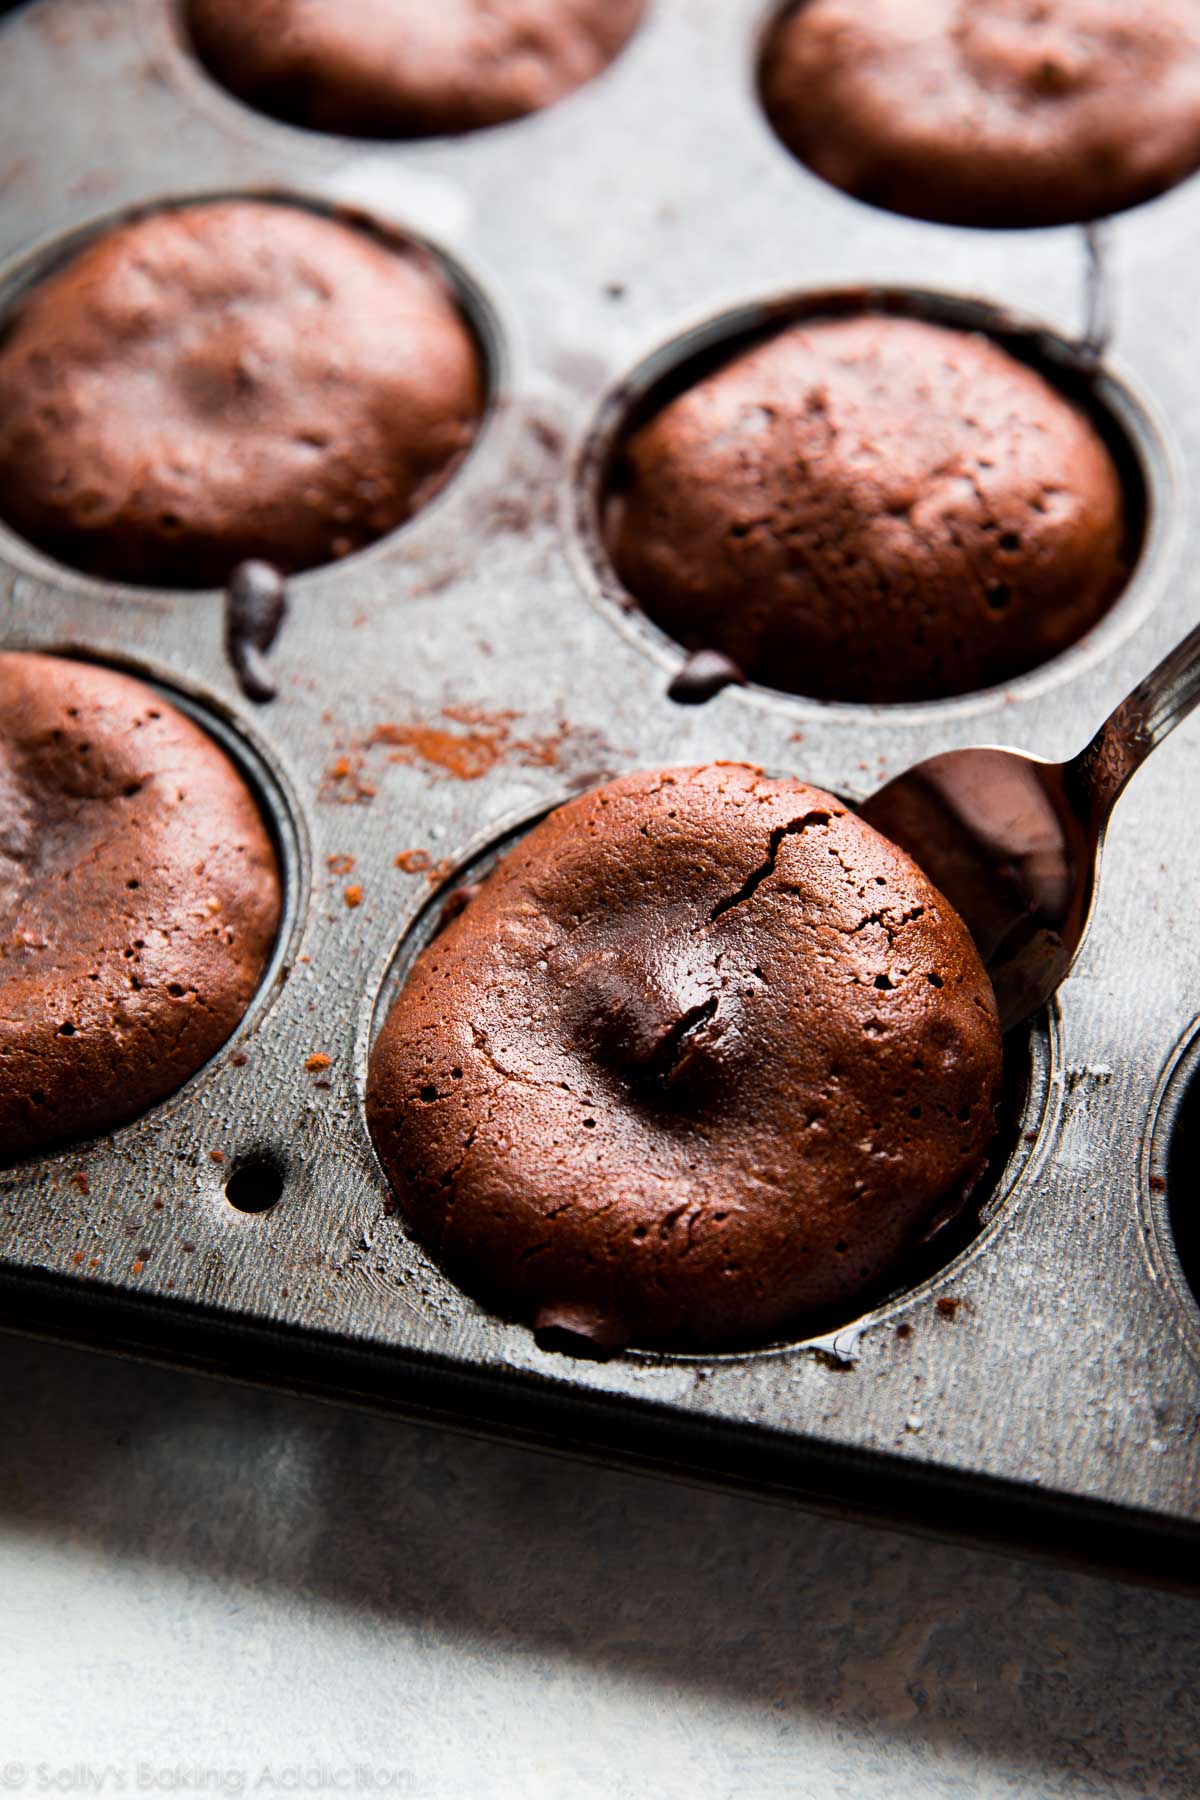 Comment faire des gâteaux de lave au chocolat à 6 ingrédients avec des photos étape par étape faciles et une vidéo de démonstration! Recette FACILE sur sallysbakingaddiction.com